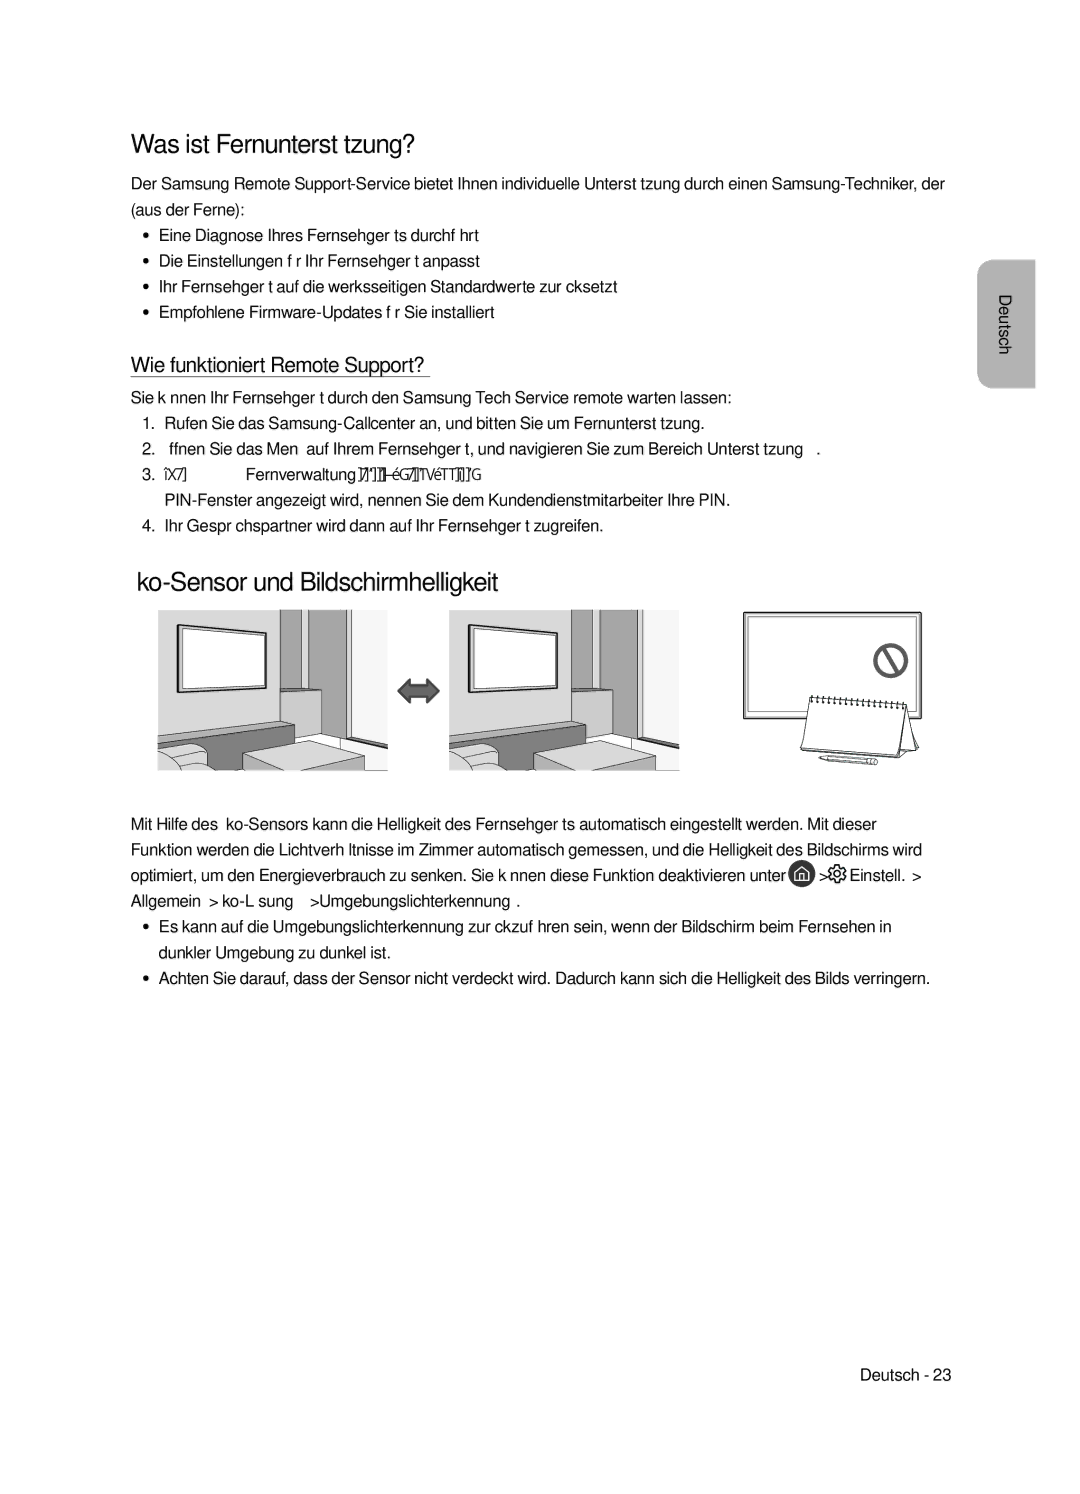 Samsung UE43LS003AUXXC Was ist Fernunterstützung?, Öko-Sensor und Bildschirmhelligkeit, Wie funktioniert Remote Support? 